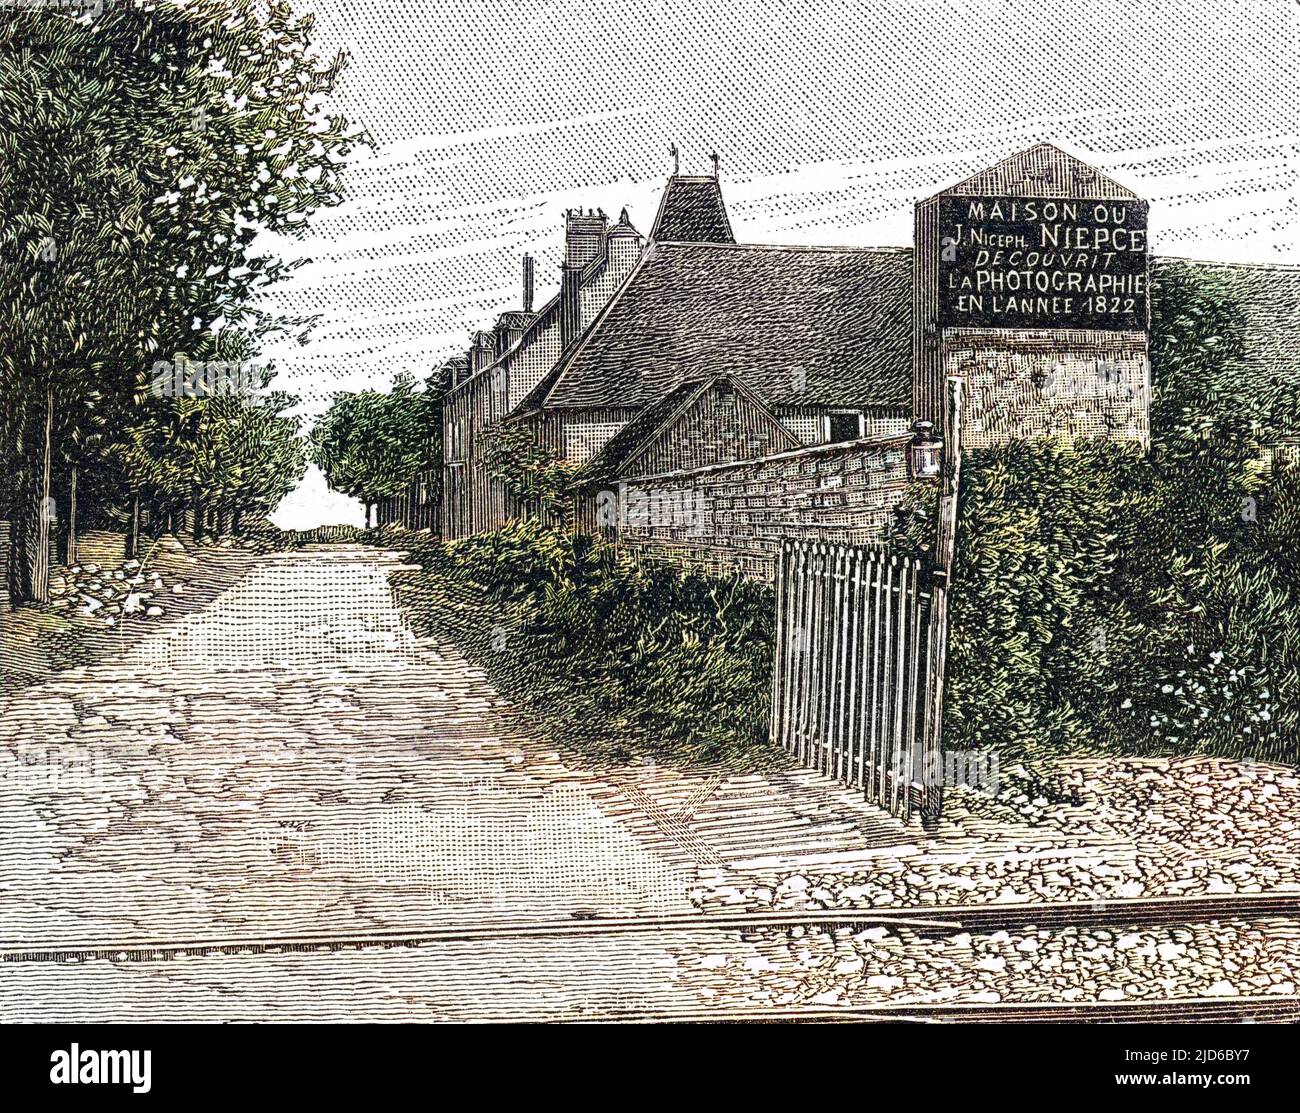 Die Heimat von Nicephore Niepce in Chalons-sur-Saone, heute ein Museum für Fotografie und einen Besuch wert, wenn Sie vorbeikommen. Kolorierte Version von : 10167347 Datum: 1891 Stockfoto